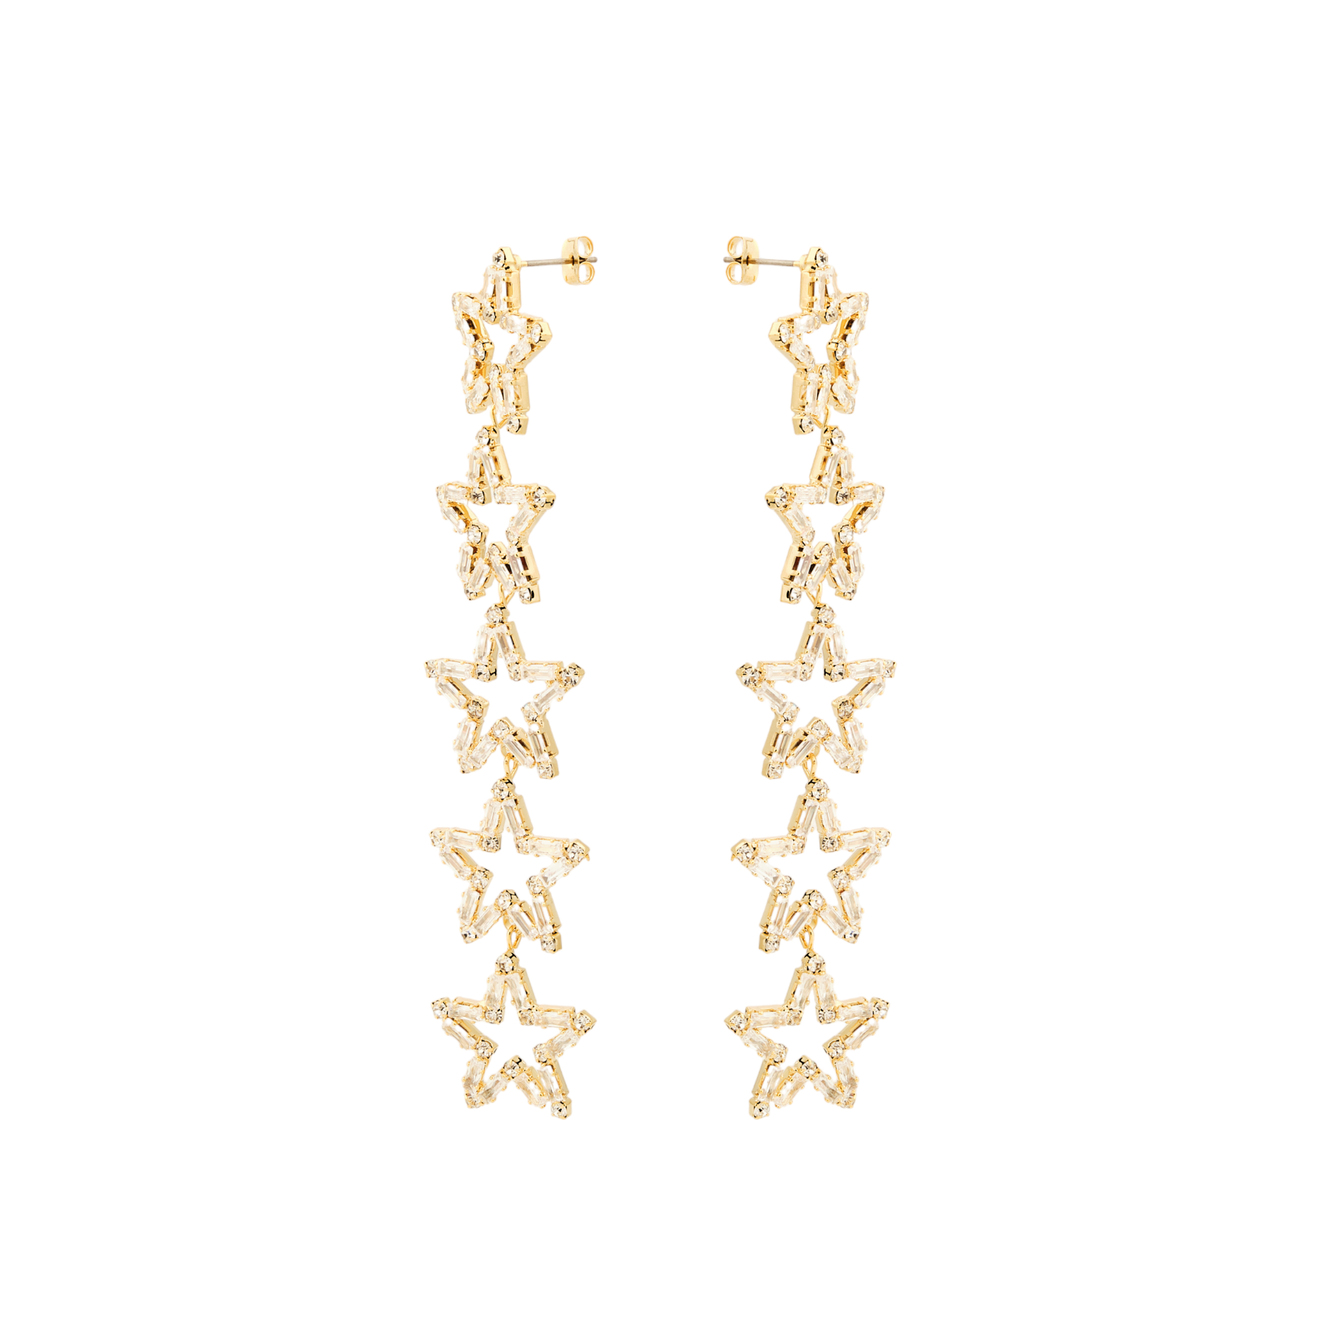 Herald Percy Золотистые длинные серьги с звездами с кристаллами skye серебряные серьги с белыми кристаллами звездами